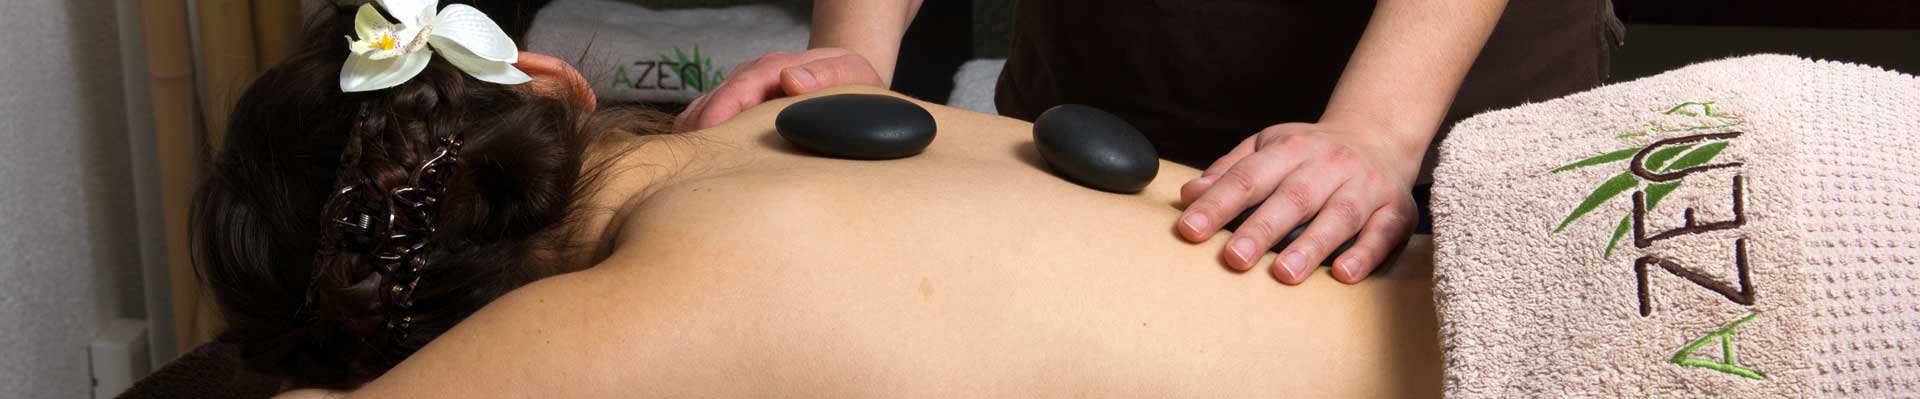 salon de massage aux pierres chaudes metz 57 moselle